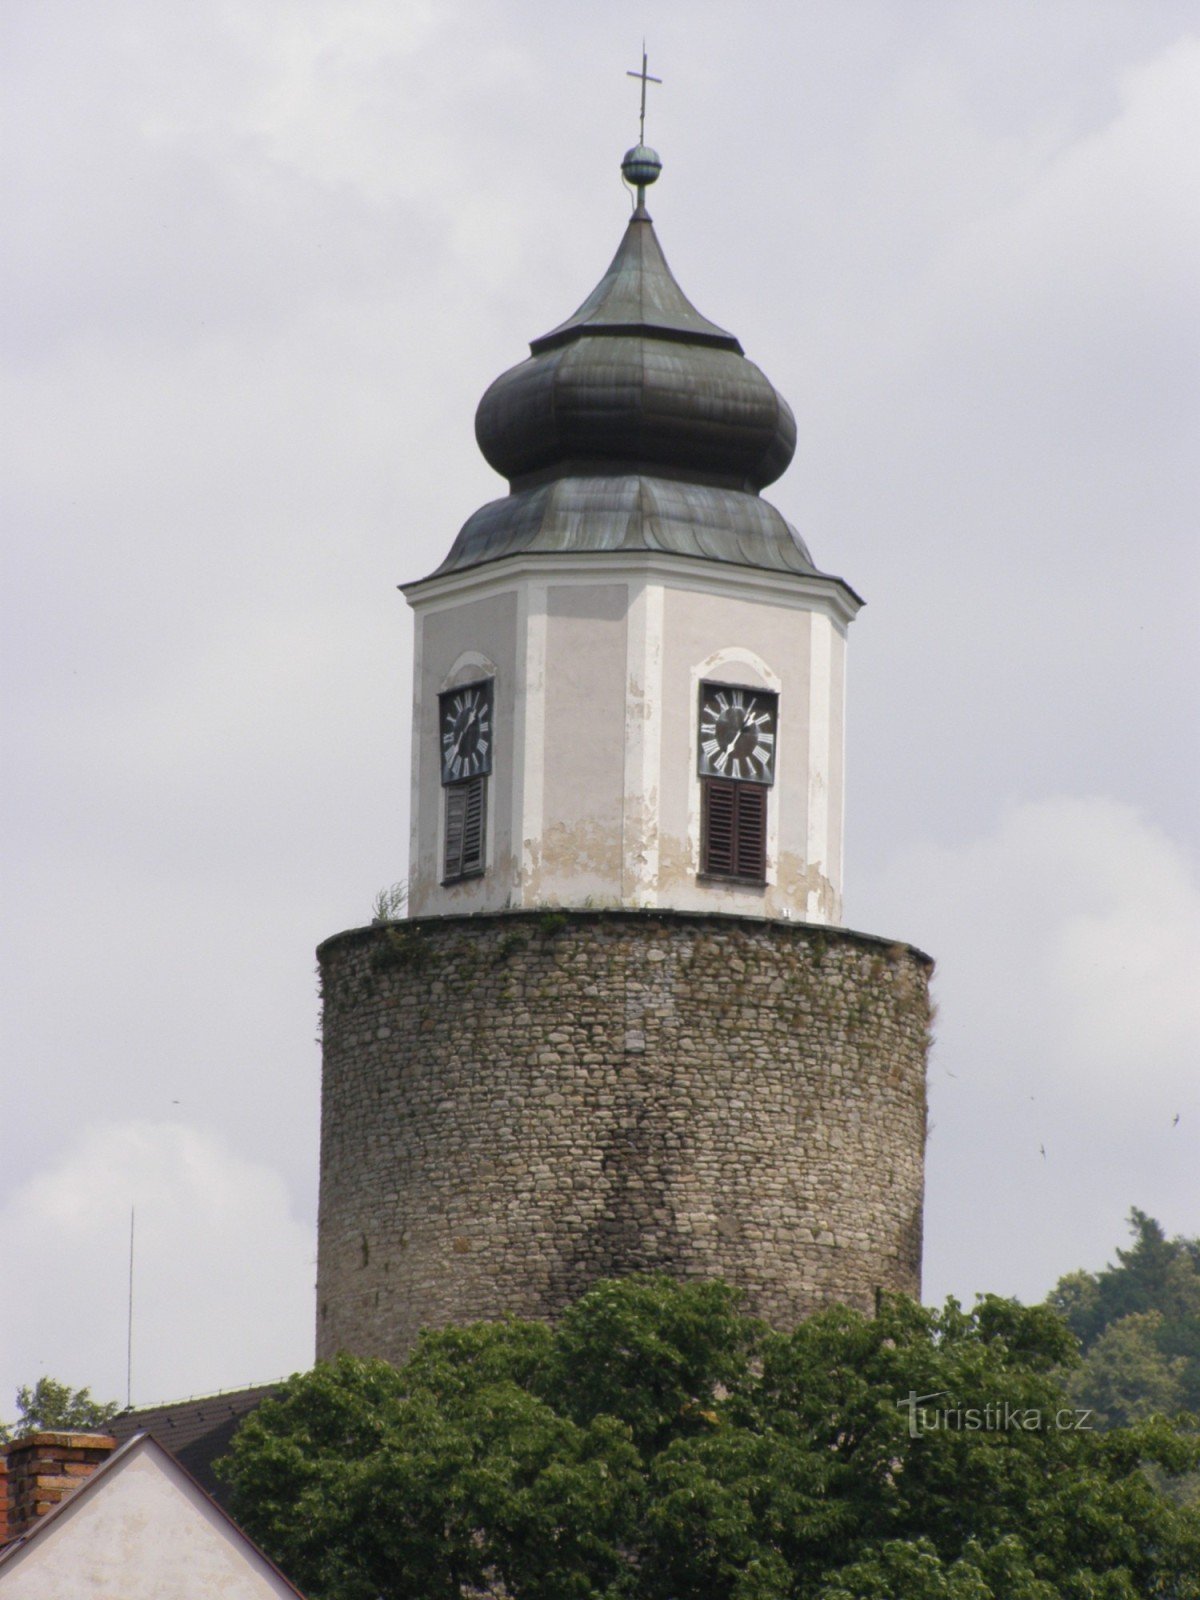 Žulová - Szt. József a vár tornyával